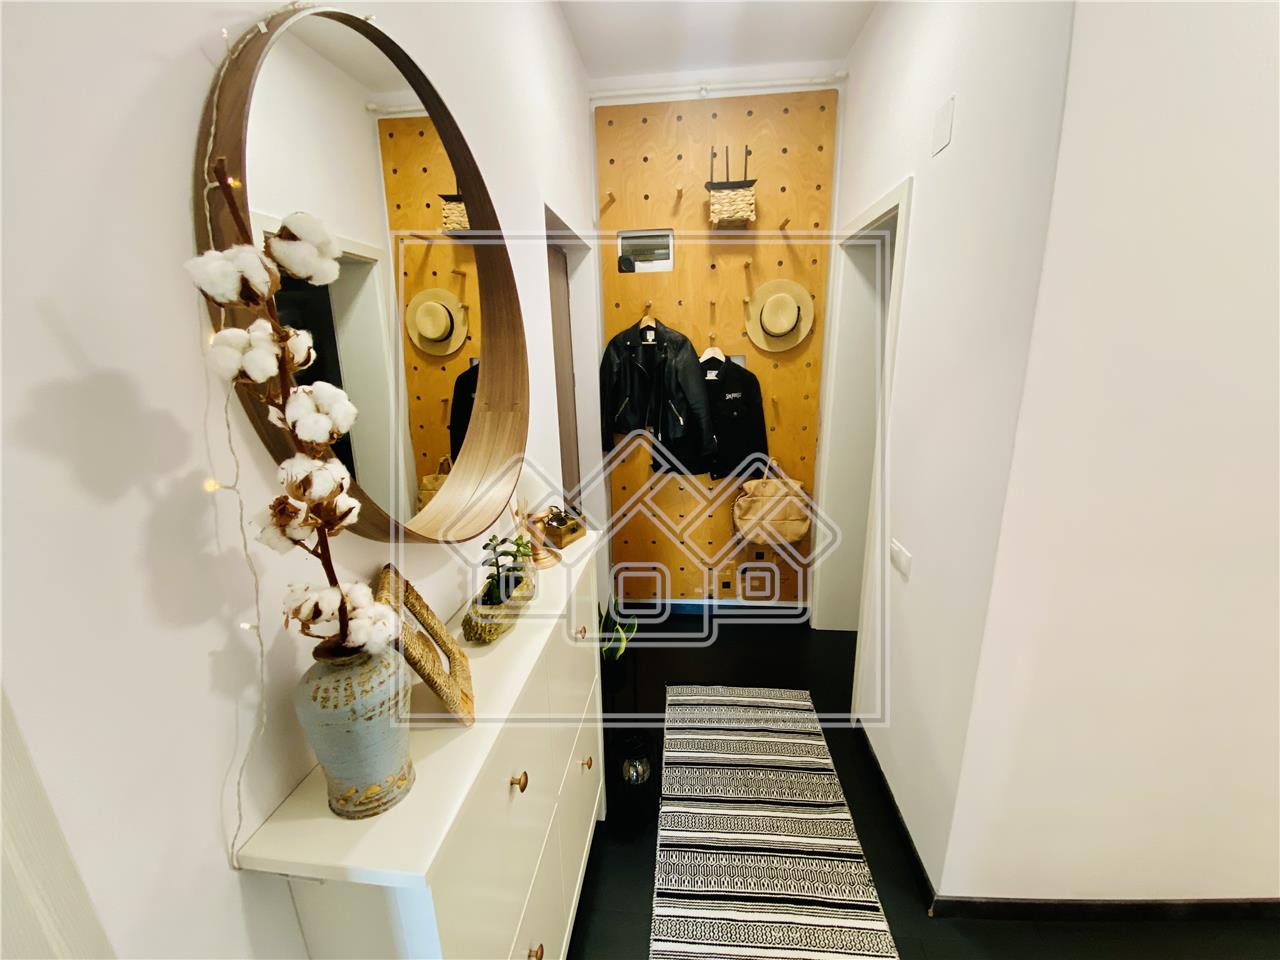 Wohnung zu verkaufen in Sibiu - 2 Zimmer, Balkon und Terrasse, Luxusko